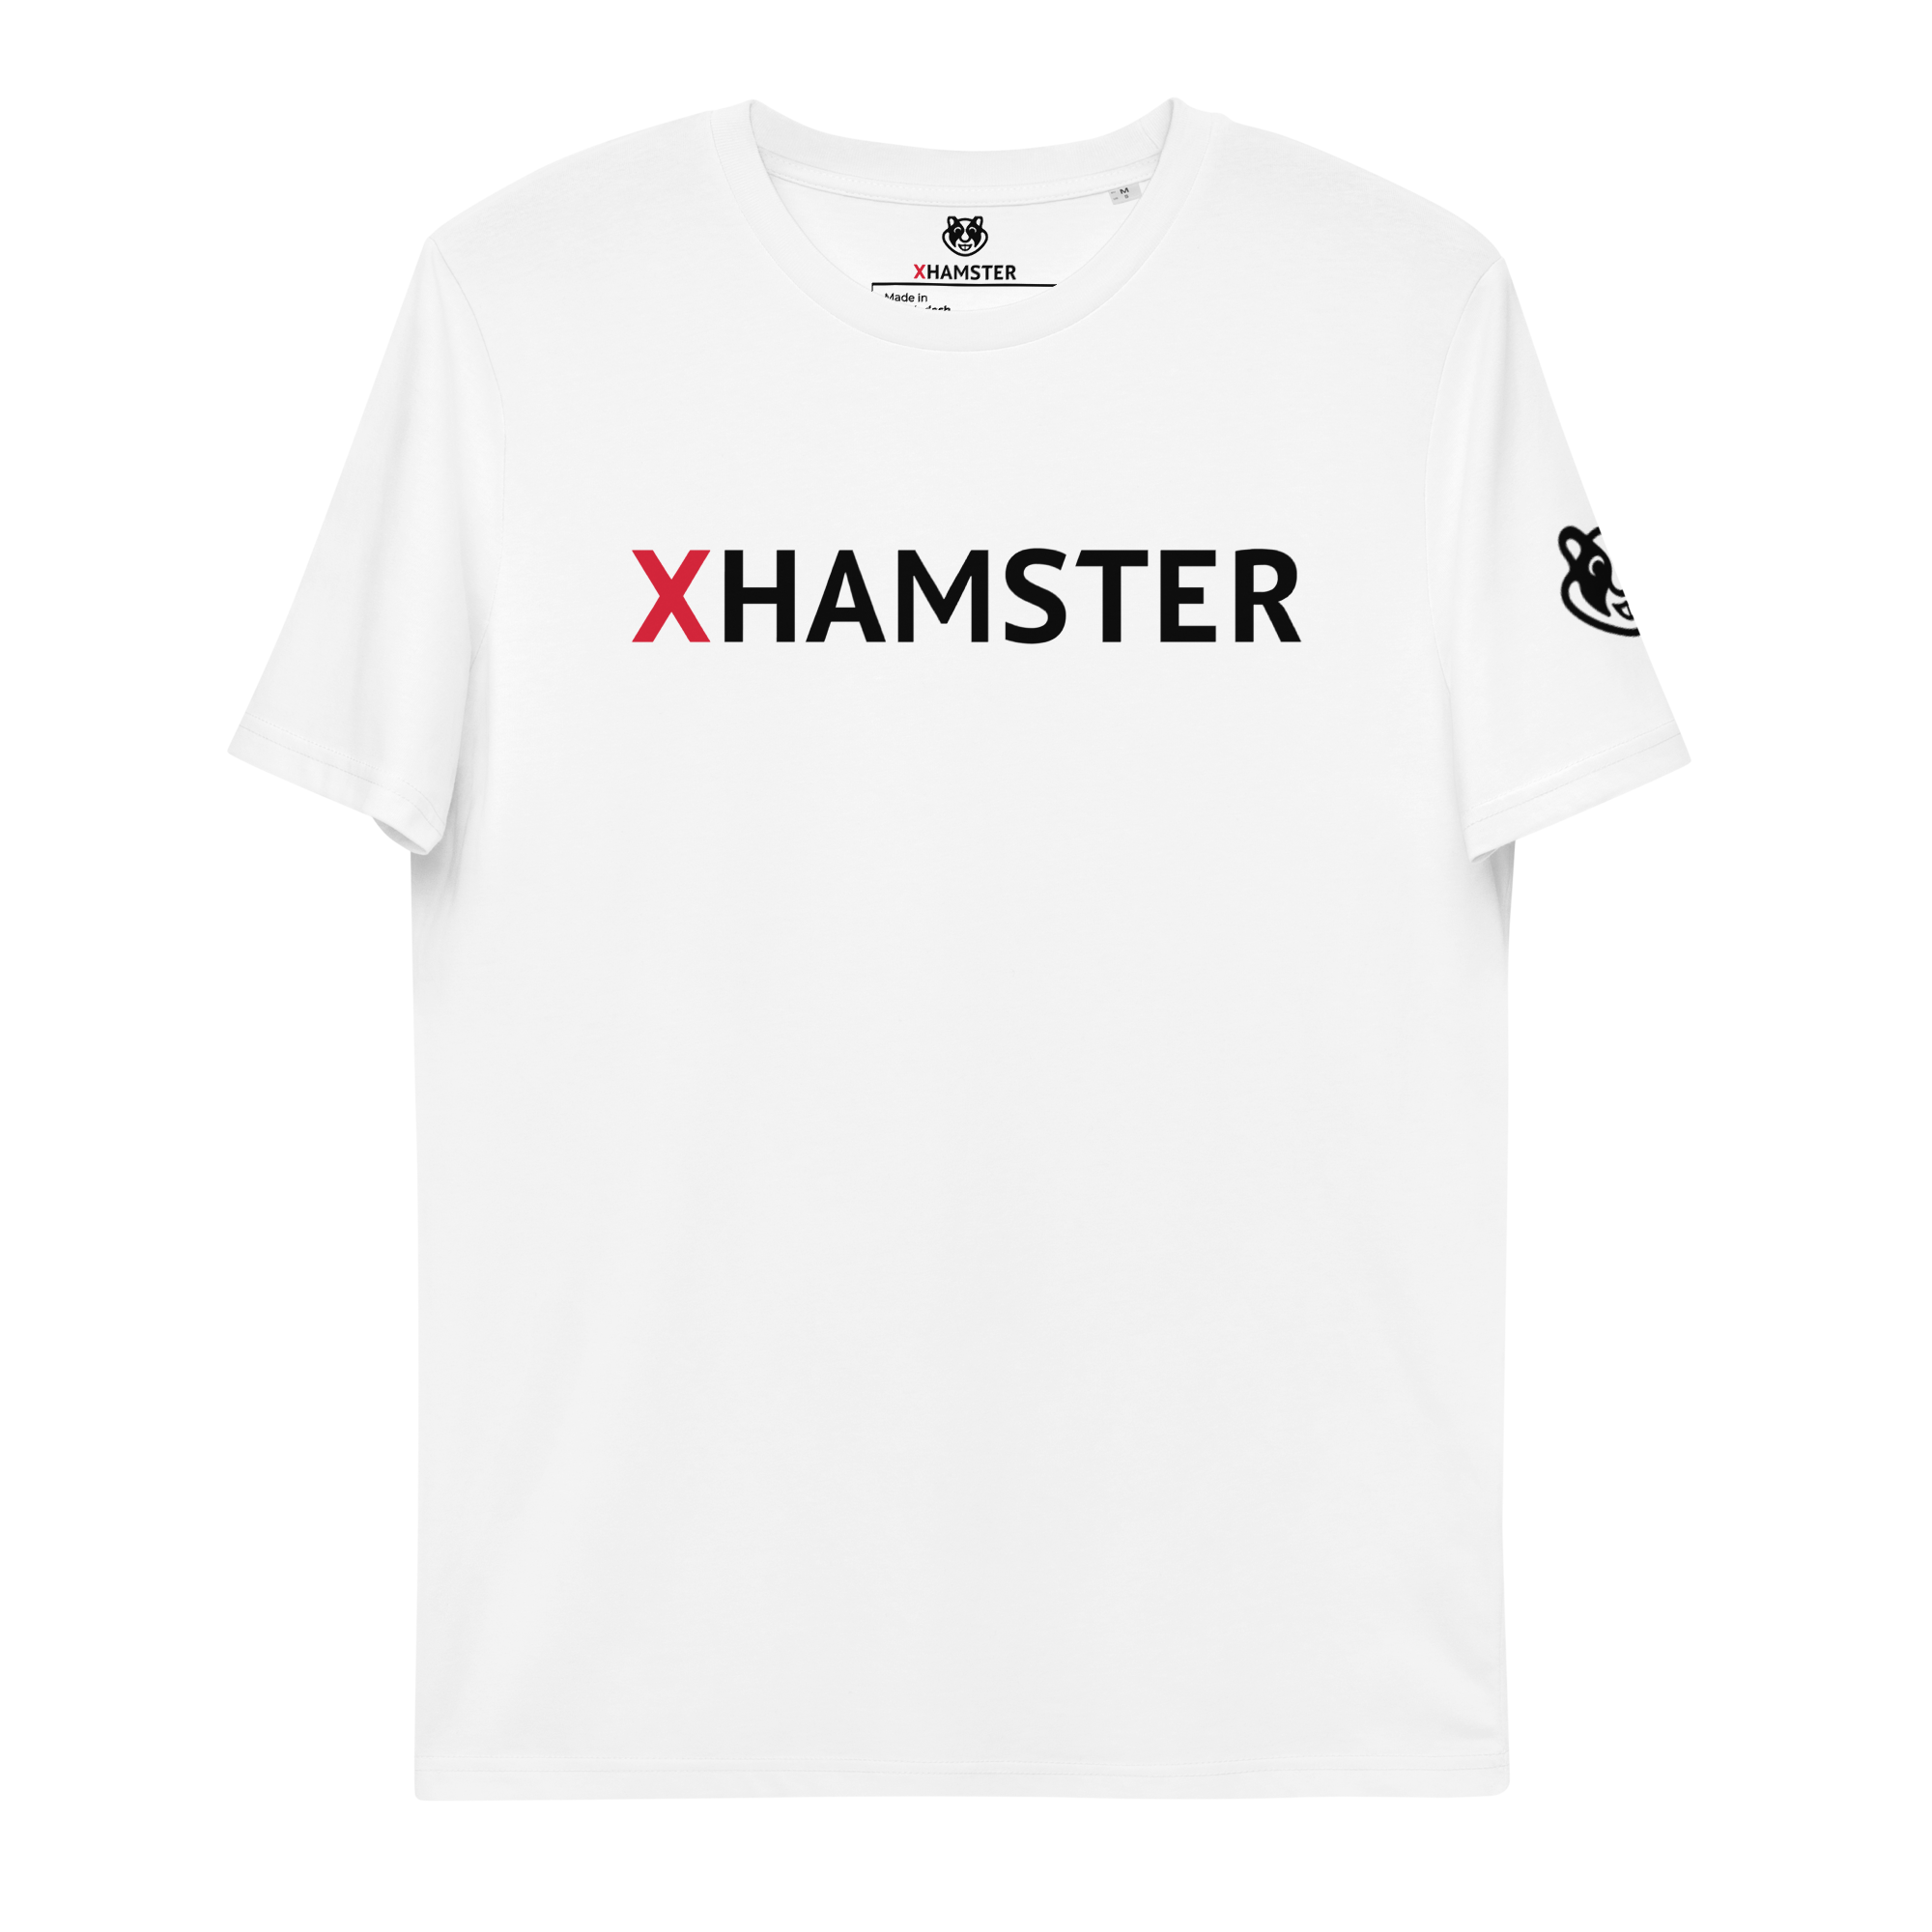 xHamster Unisex Cotton T-shirt (White)